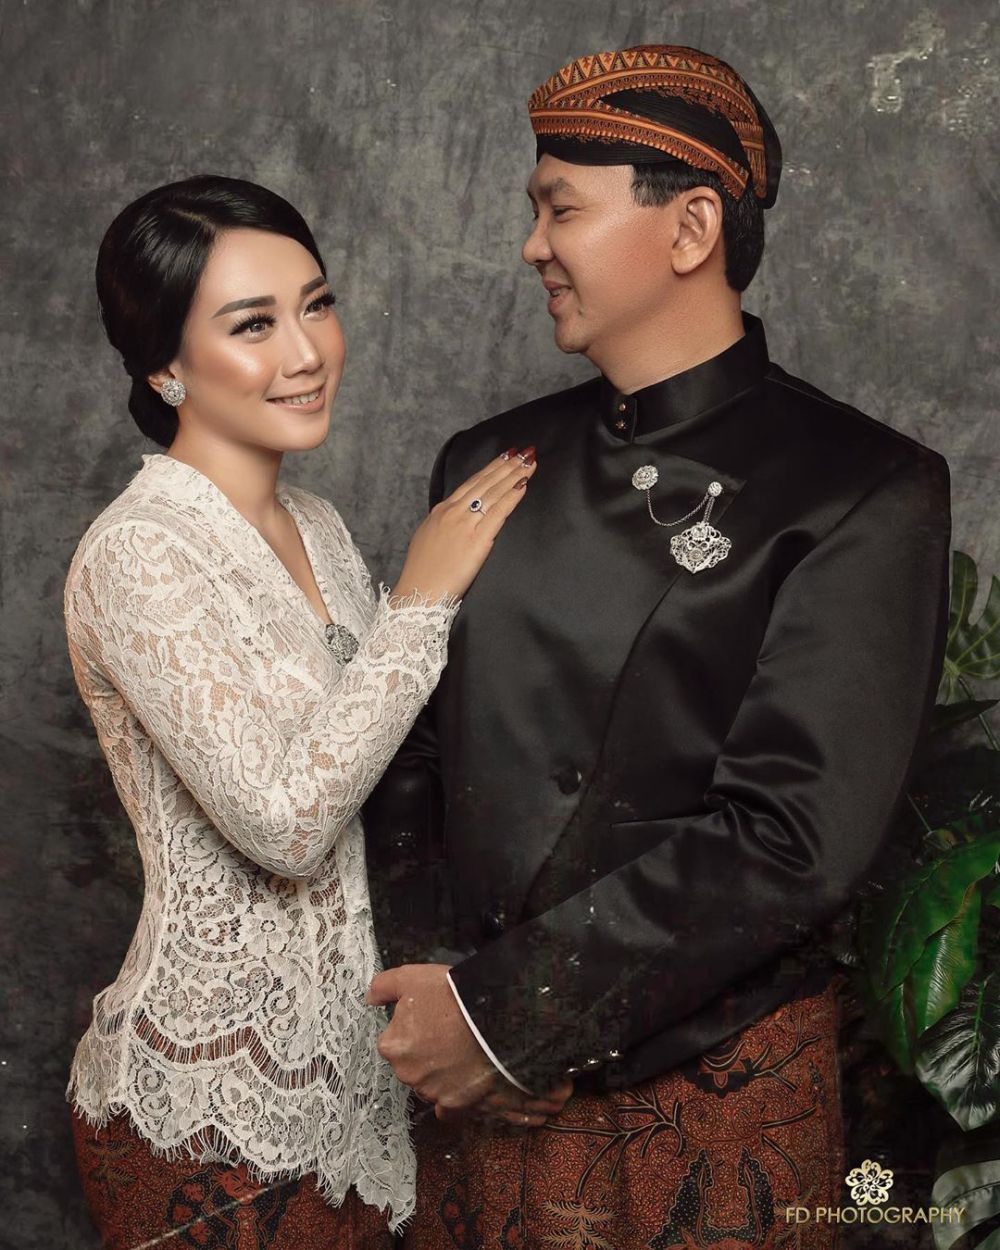 Fotografer ungkap rahasia di balik foto pernikahan Ahok dan Puput